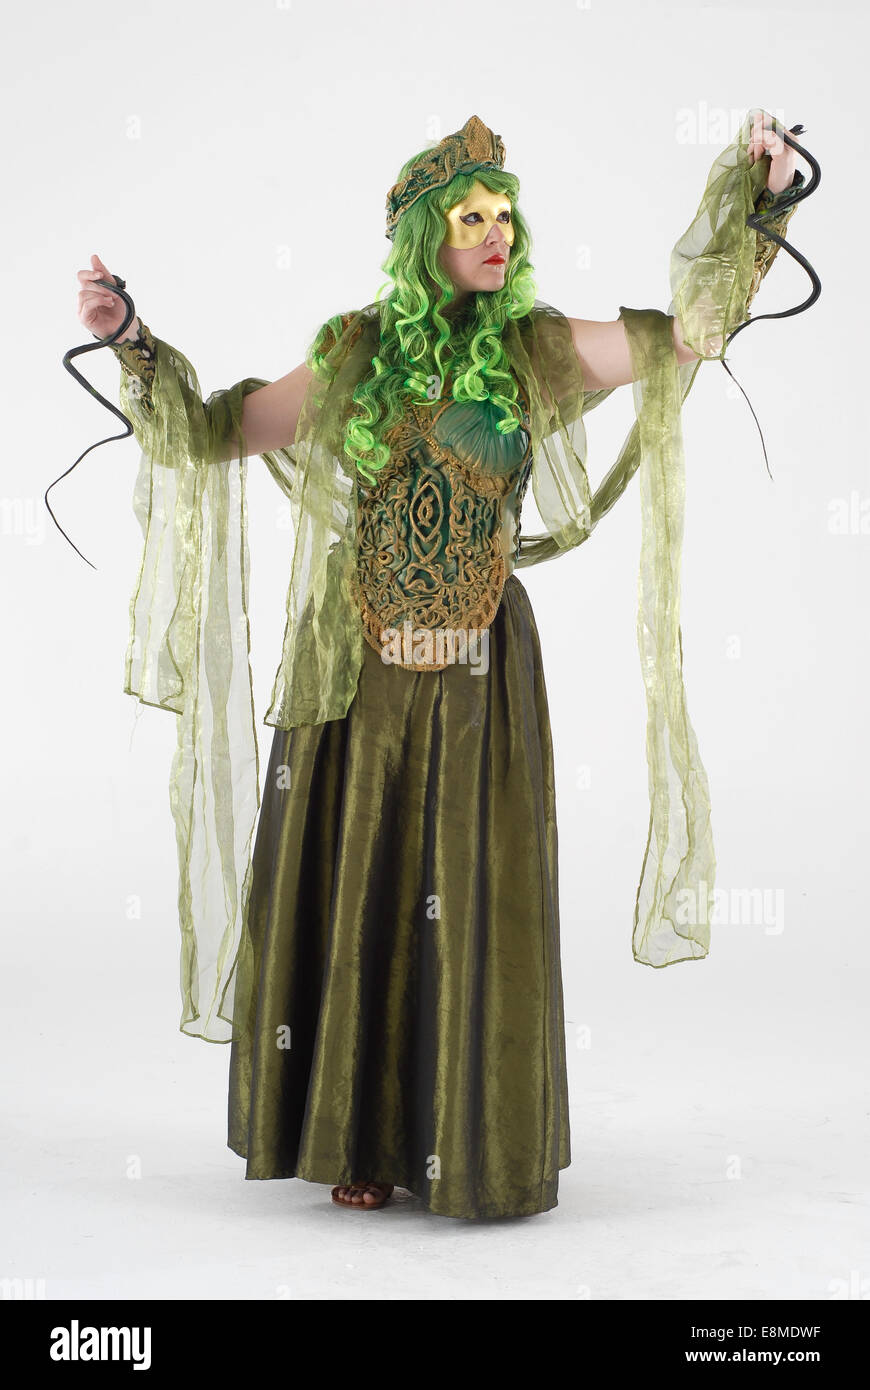 Donna in costume costume da commedia come Medusa mitologico, adatto per la  pantomima / play Foto stock - Alamy